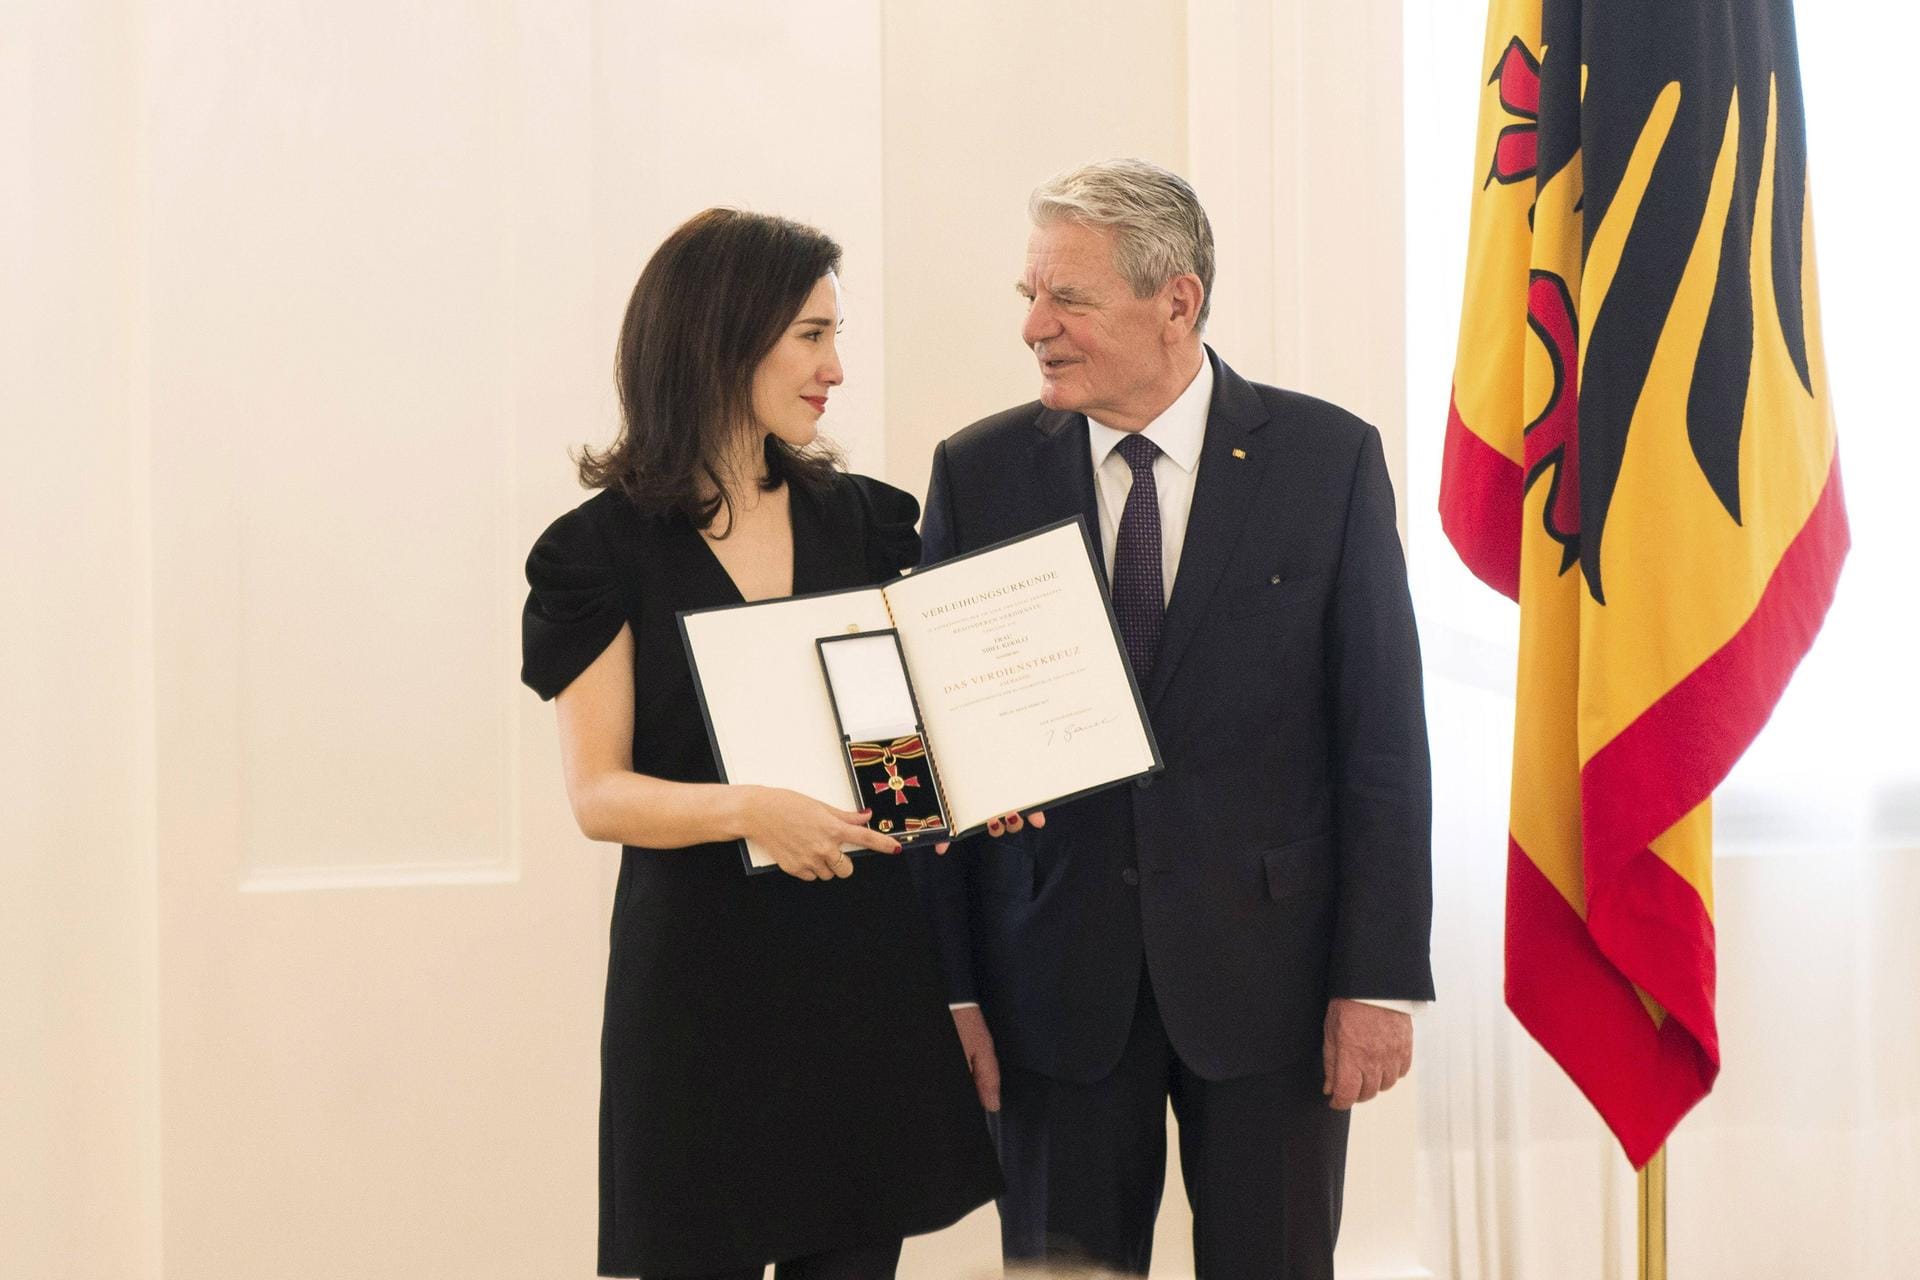 2017: Sibel Kekilli erhält das Verdienstkreuz am Bande von Joachim Gauck bei der Ordensverleihung zum Internationalen Frauentag durch den Bundespräsidenten im Schloss Bellevue.